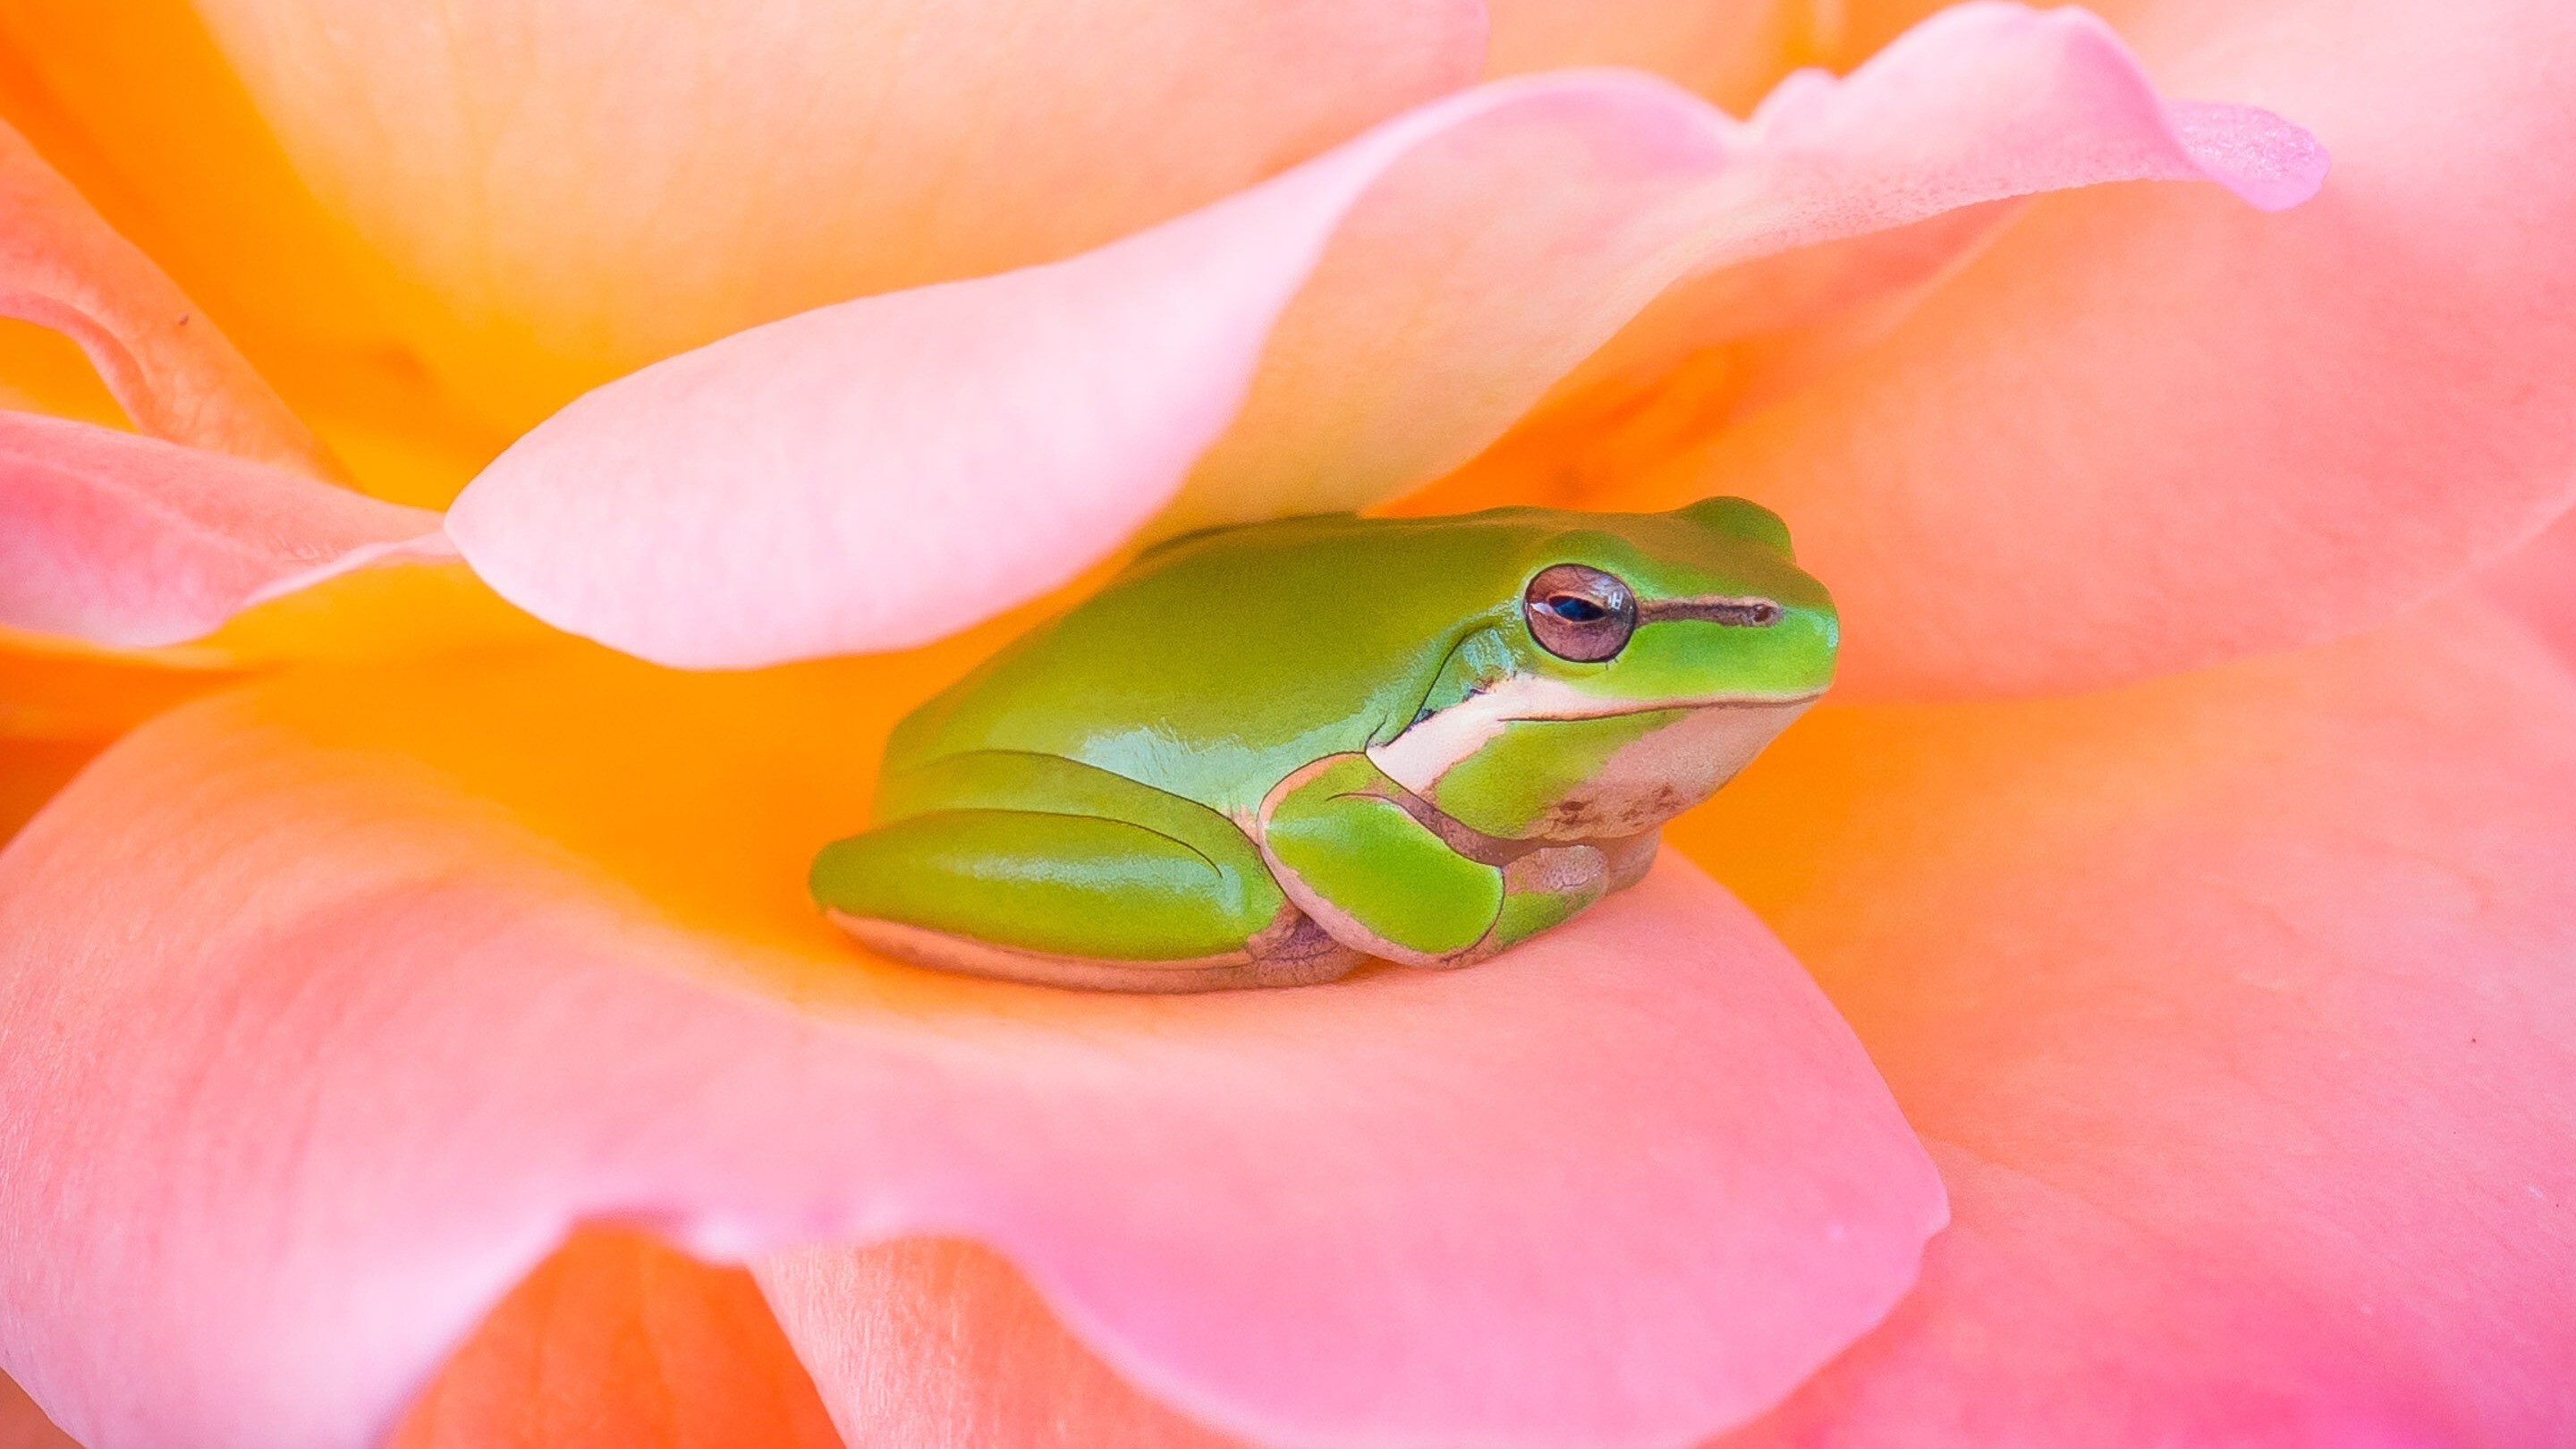 Cute Frog in Pink Flower